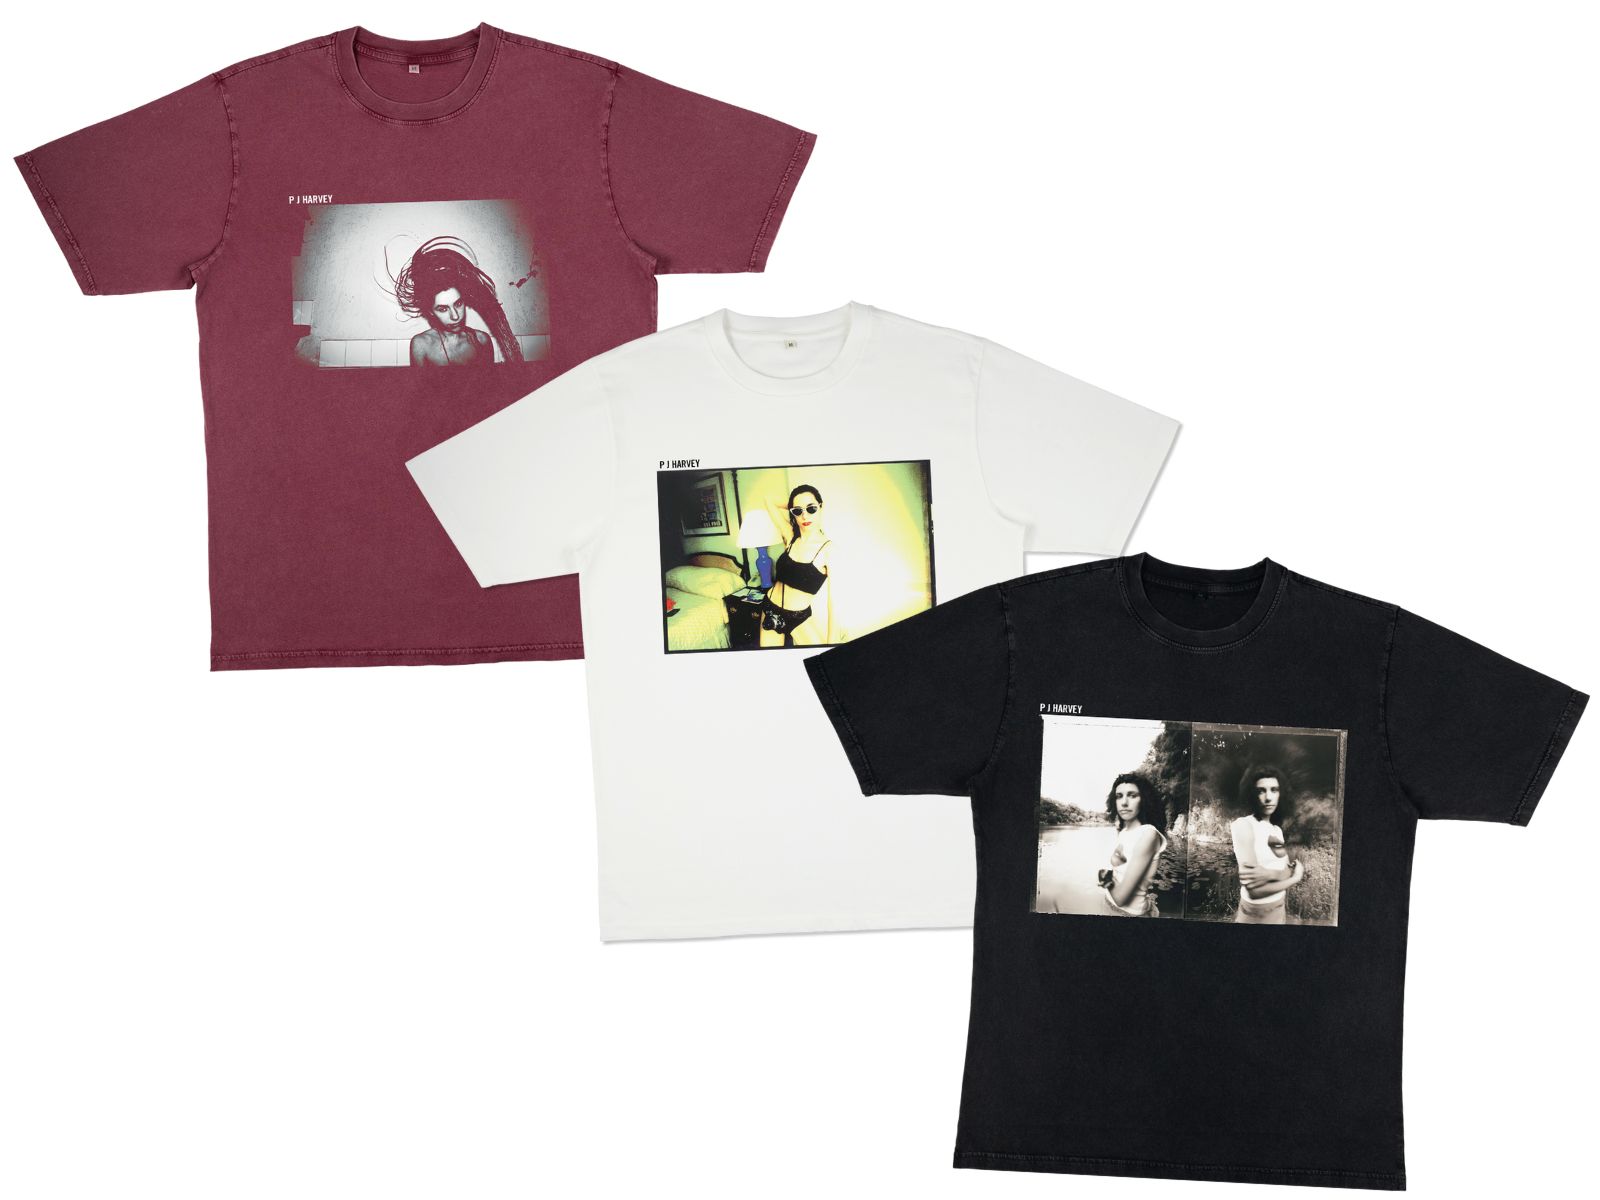 PJ Harvey - new back catalogue t-shirts